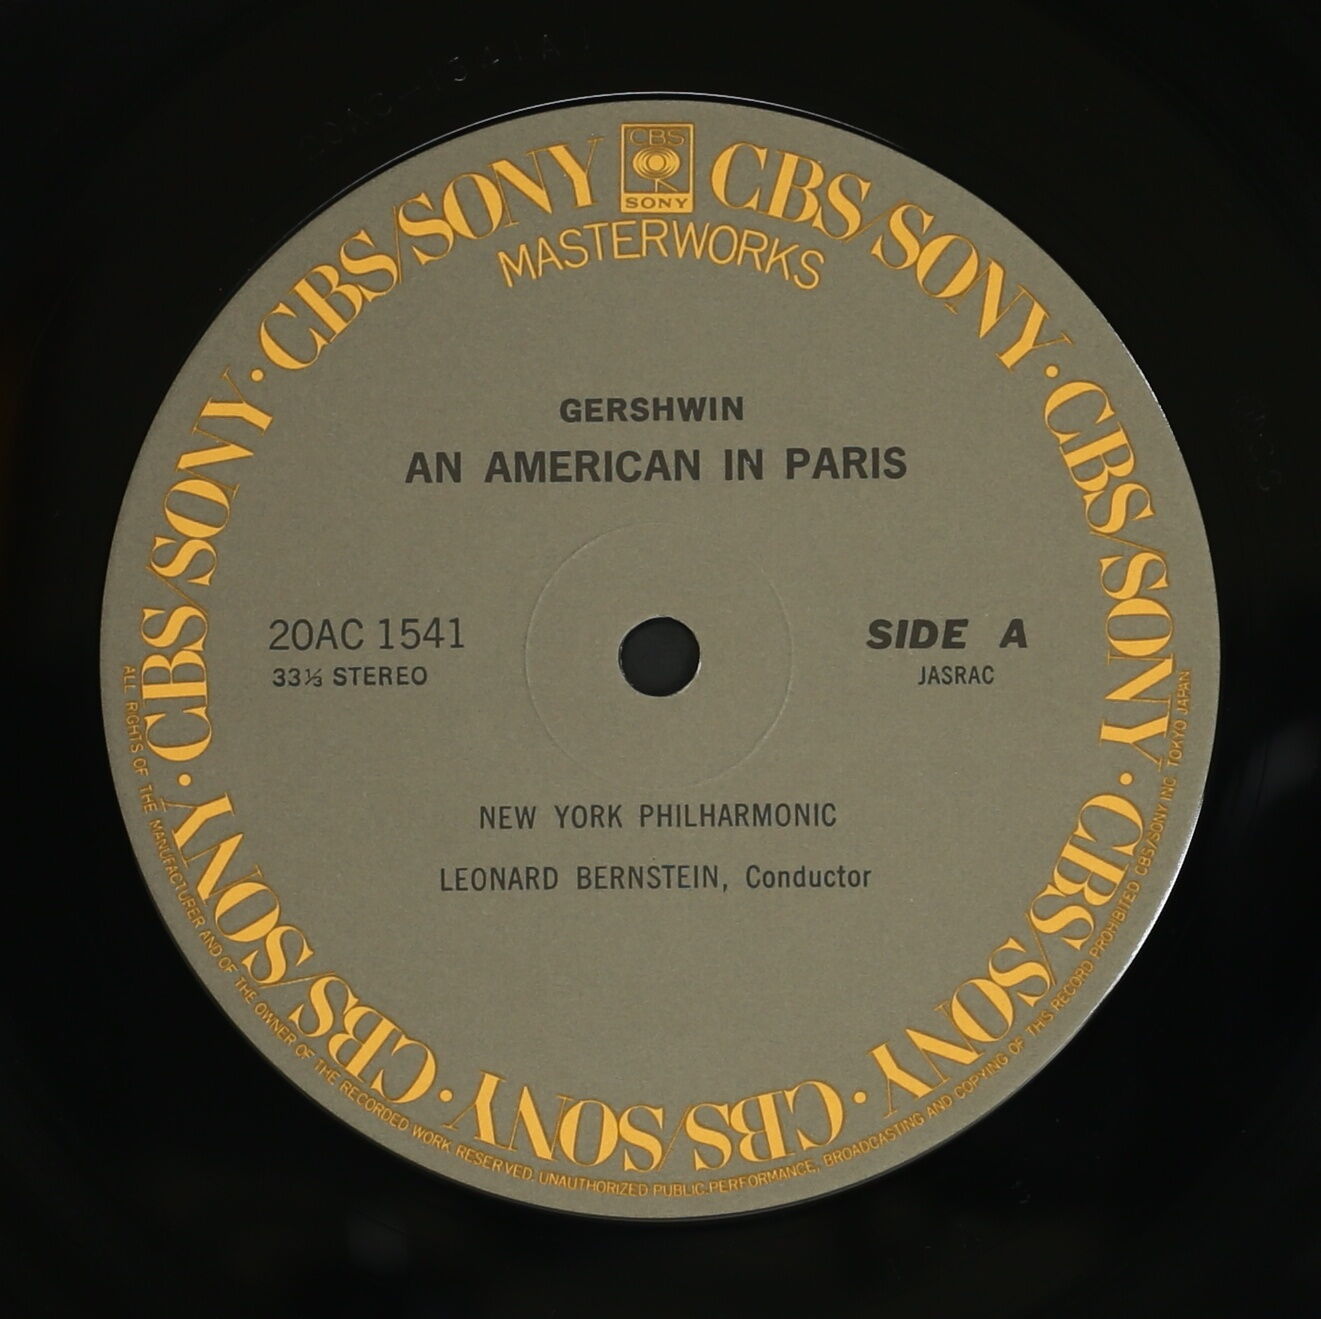 レナード・バーンスタイン,NYP / ガーシュイン:パリのアメリカ人